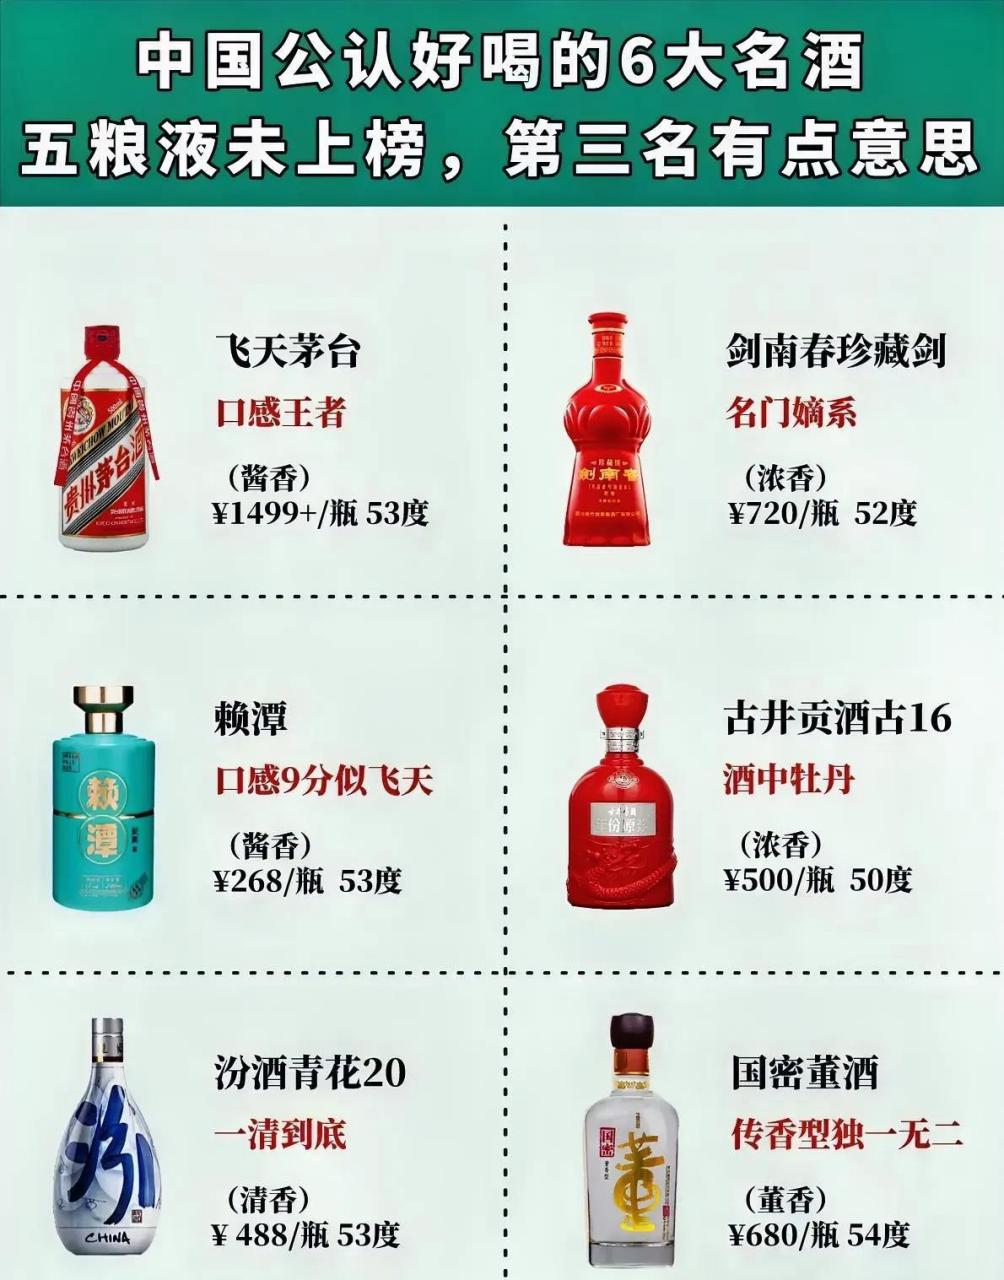 中国公认好喝的6大名酒,老大仍是茅台,五粮液未上榜,第三名有点意思!